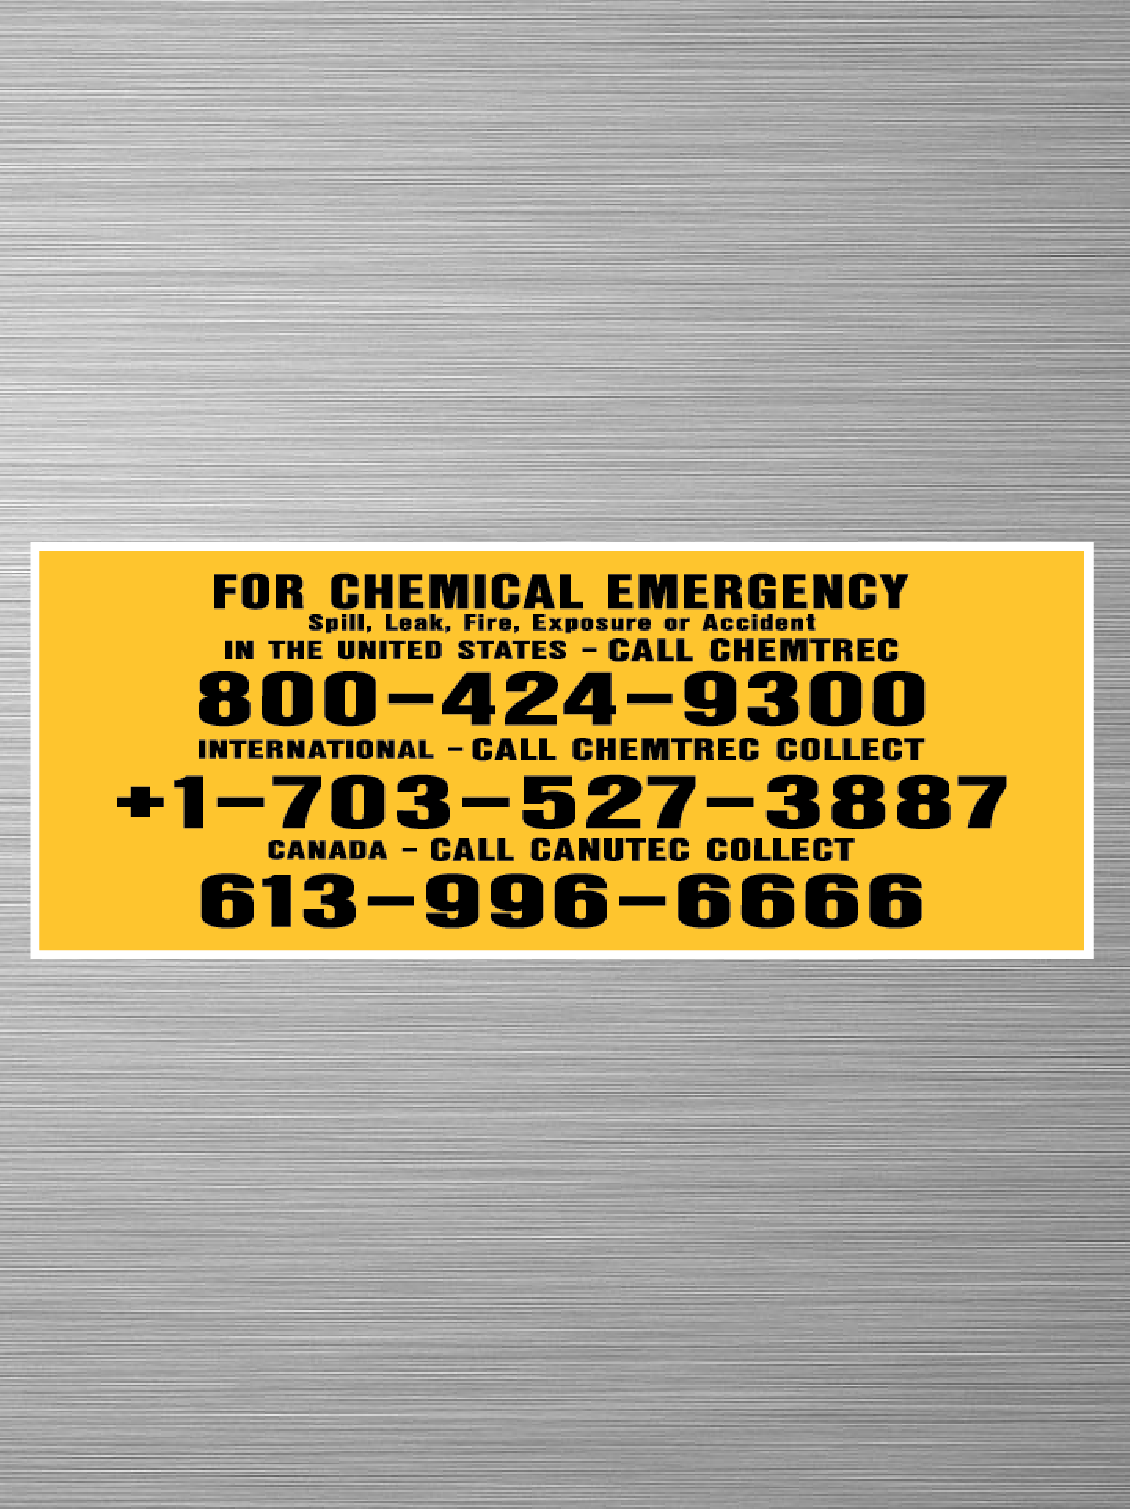 Chemtrec - Chemical Emergency - International